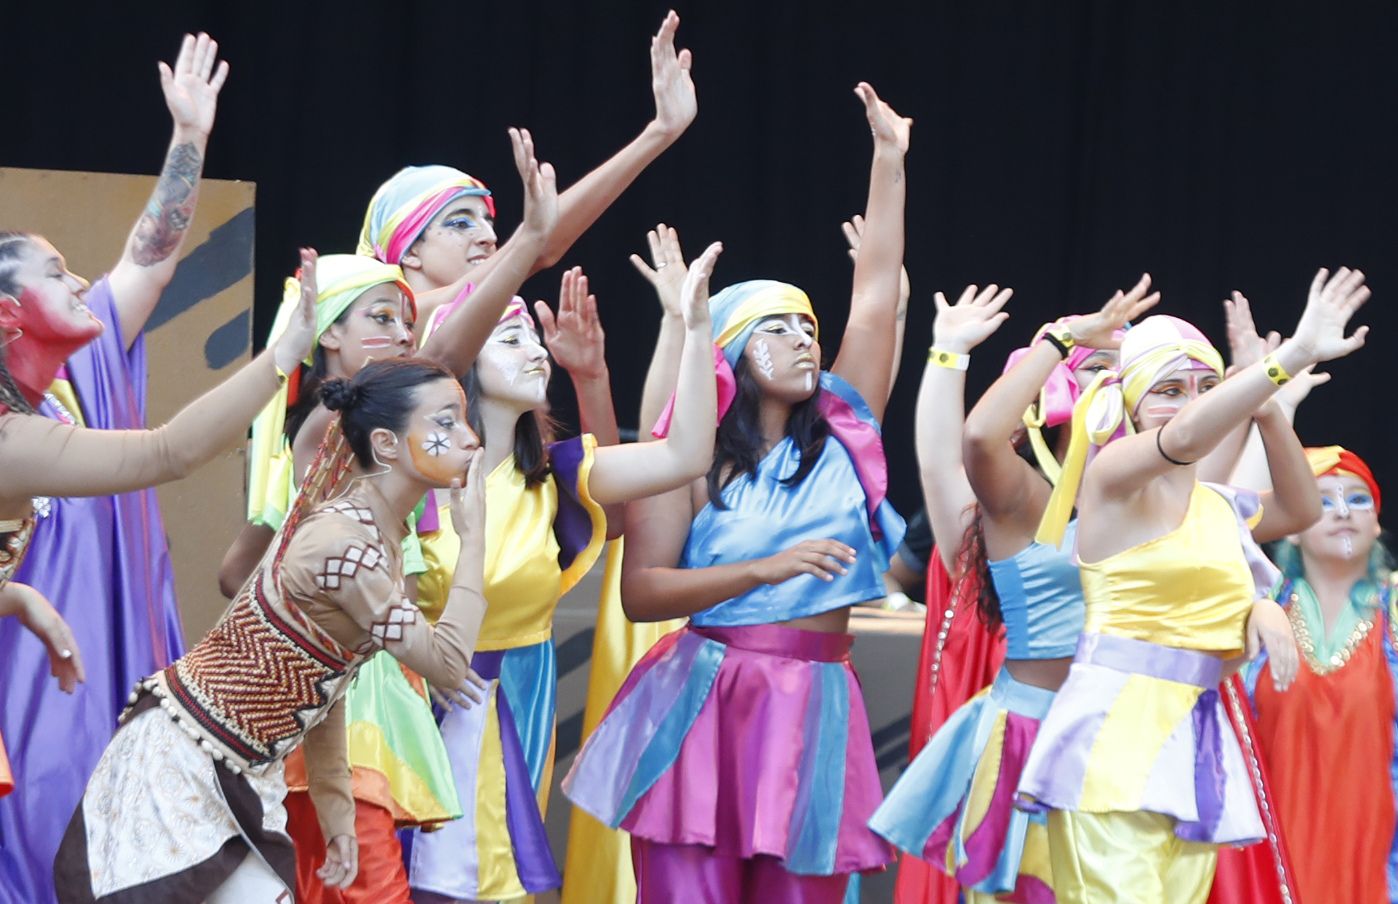 El musical "O Rei da Sabana" congrega a cientos de familias en Castrelos